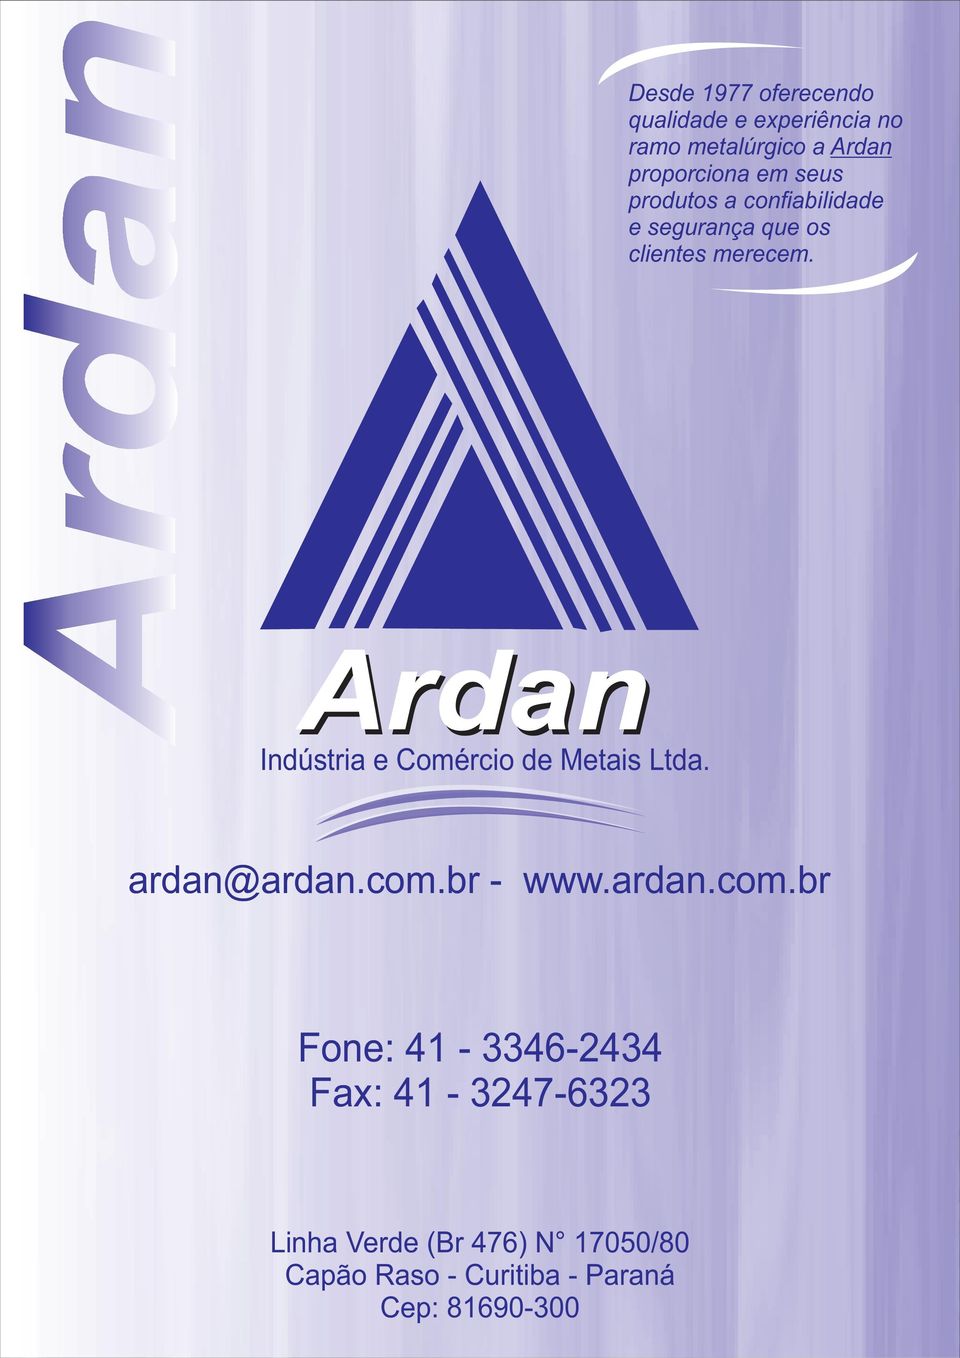 Indústria e Comércio de Metais Ltda. ardan@ardan.com.